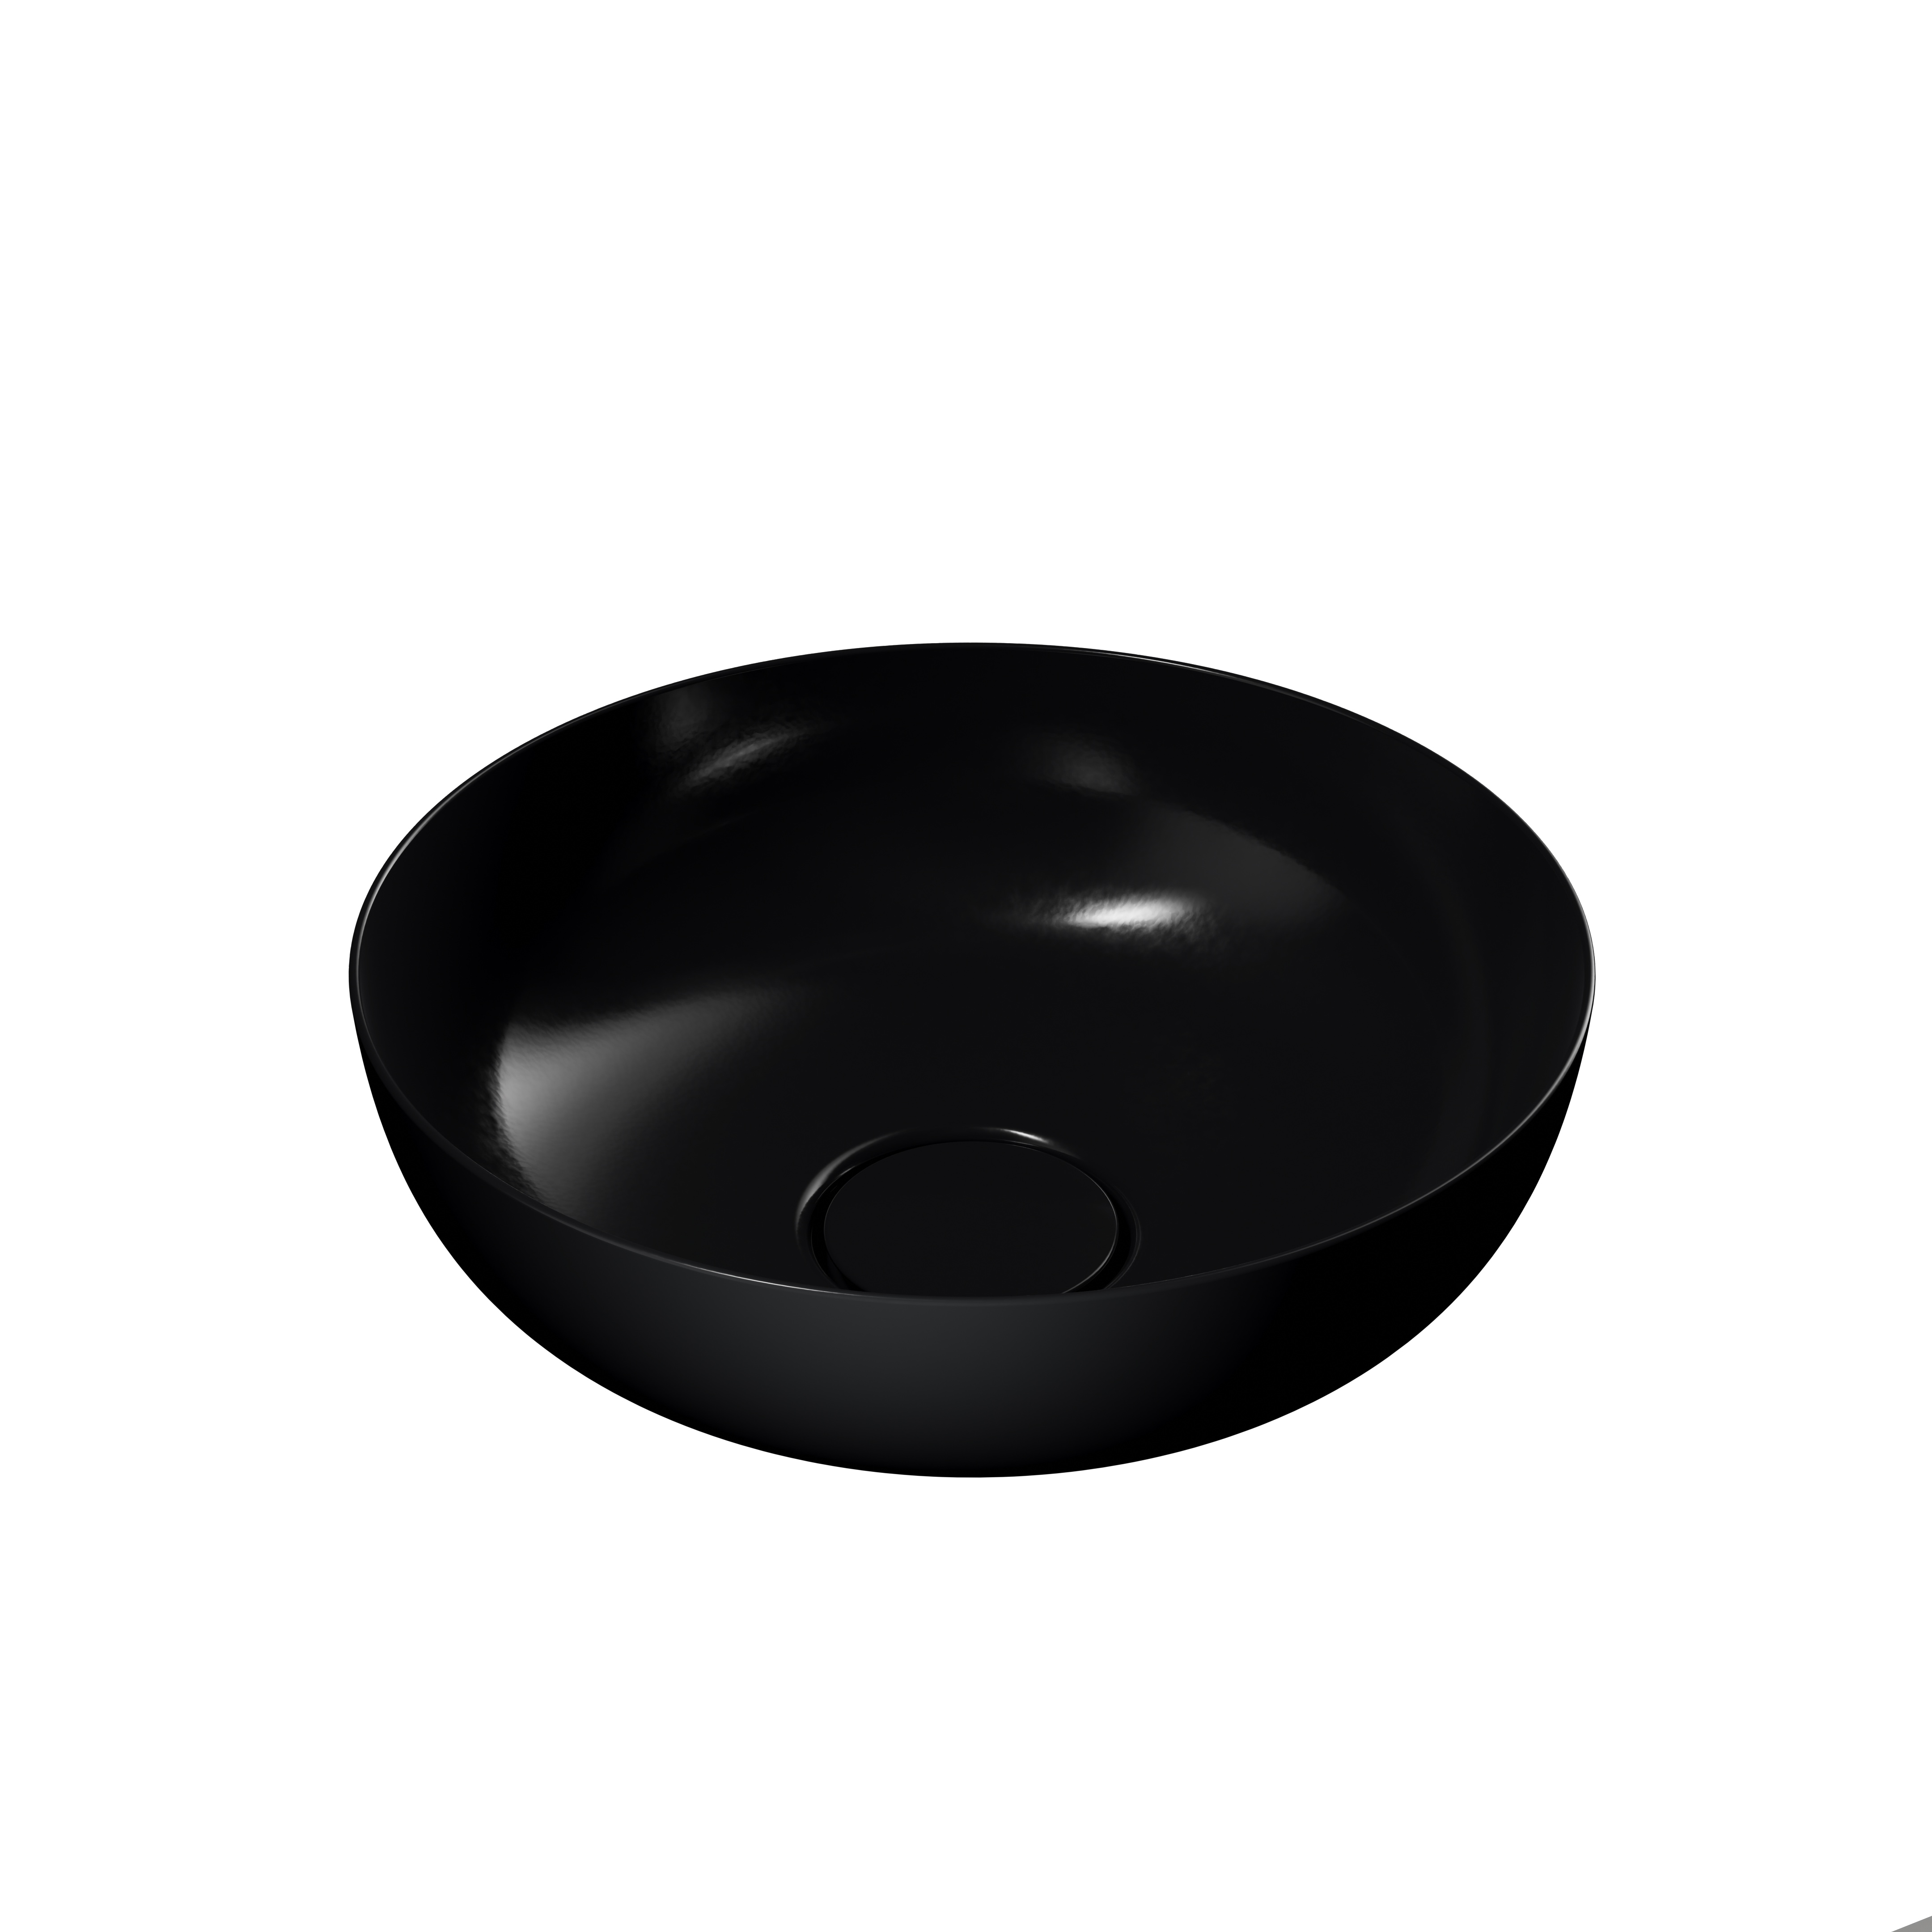 Waschtischschale „Miena“ ⌀ 31 cm in schwarz, mit Perl-Effekt